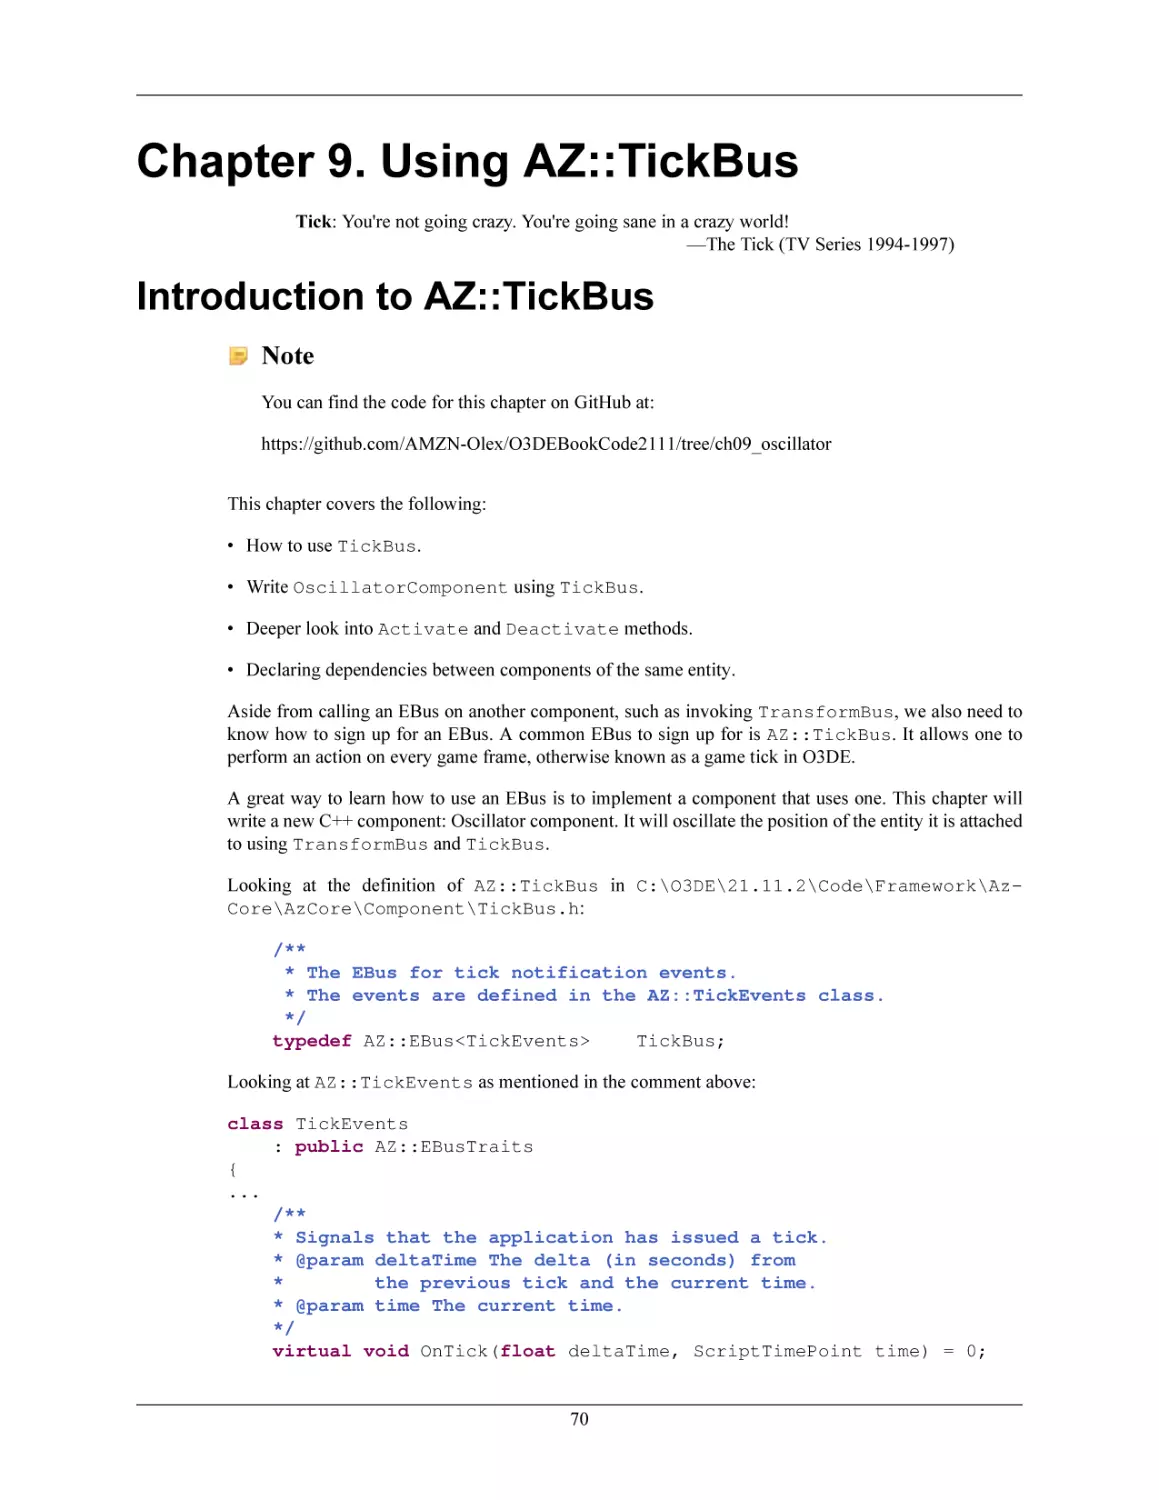 Chapter 9. Using AZ
Introduction to AZ